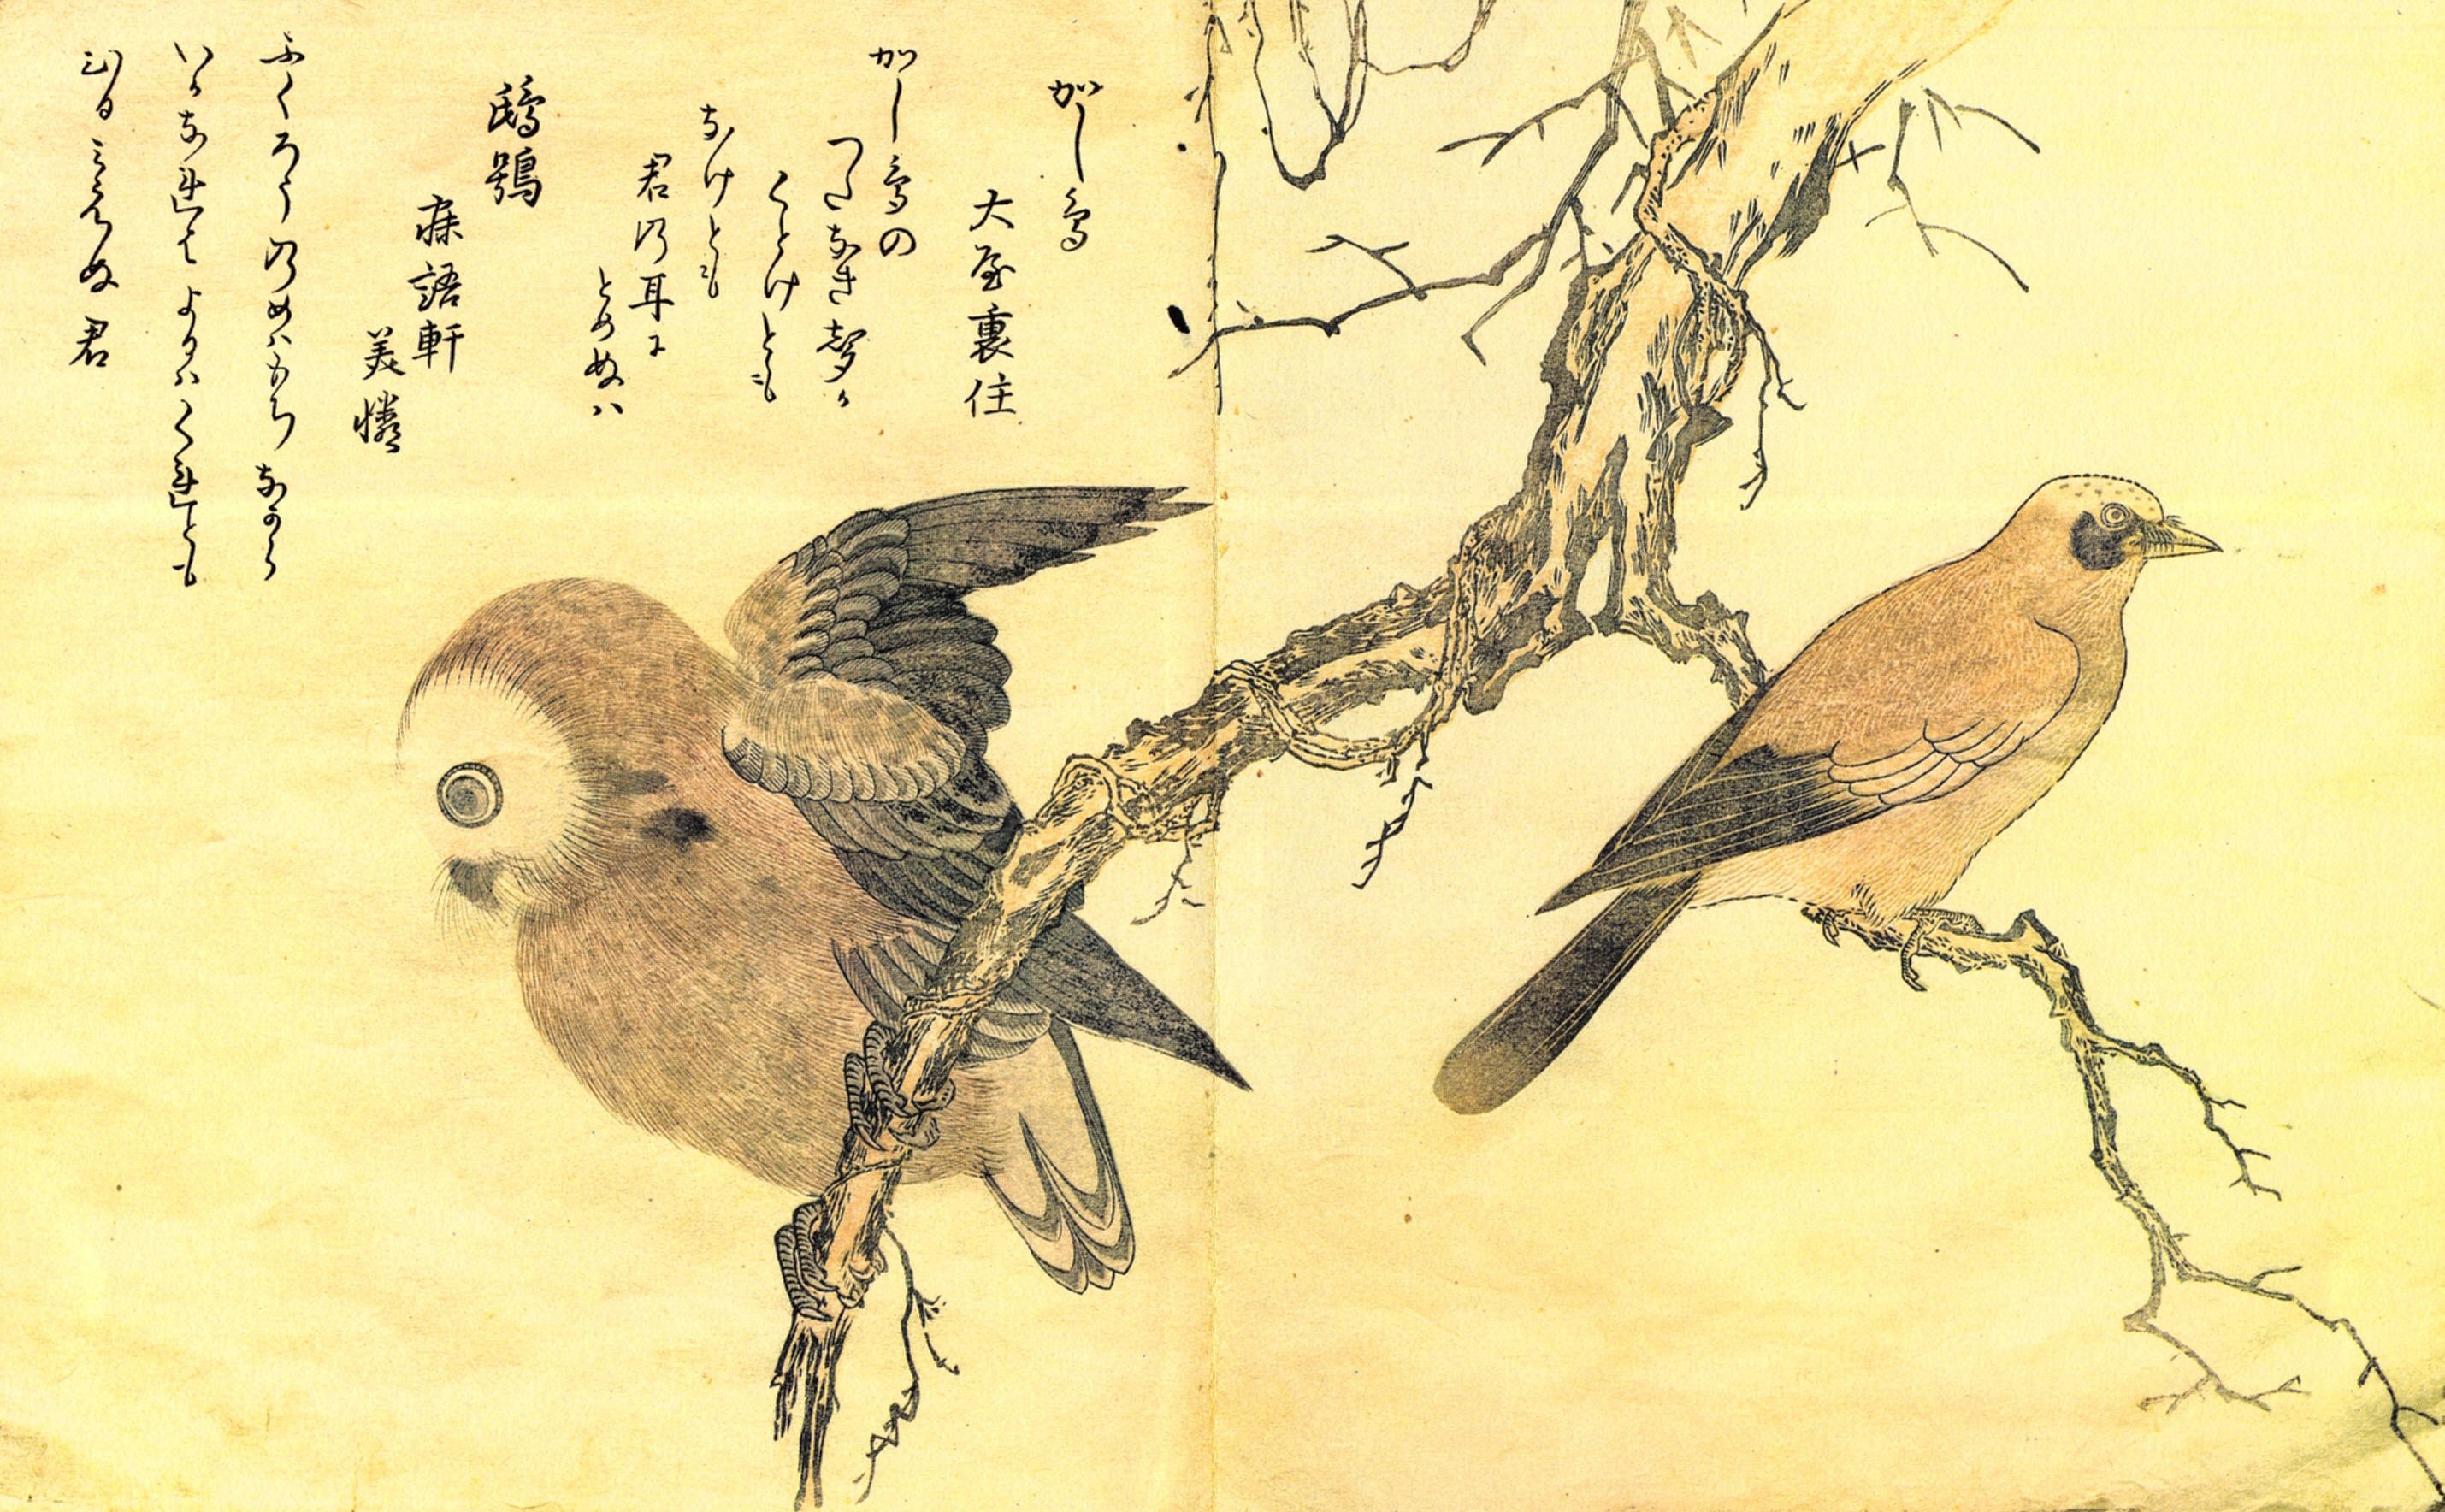 16 птиц на китайском